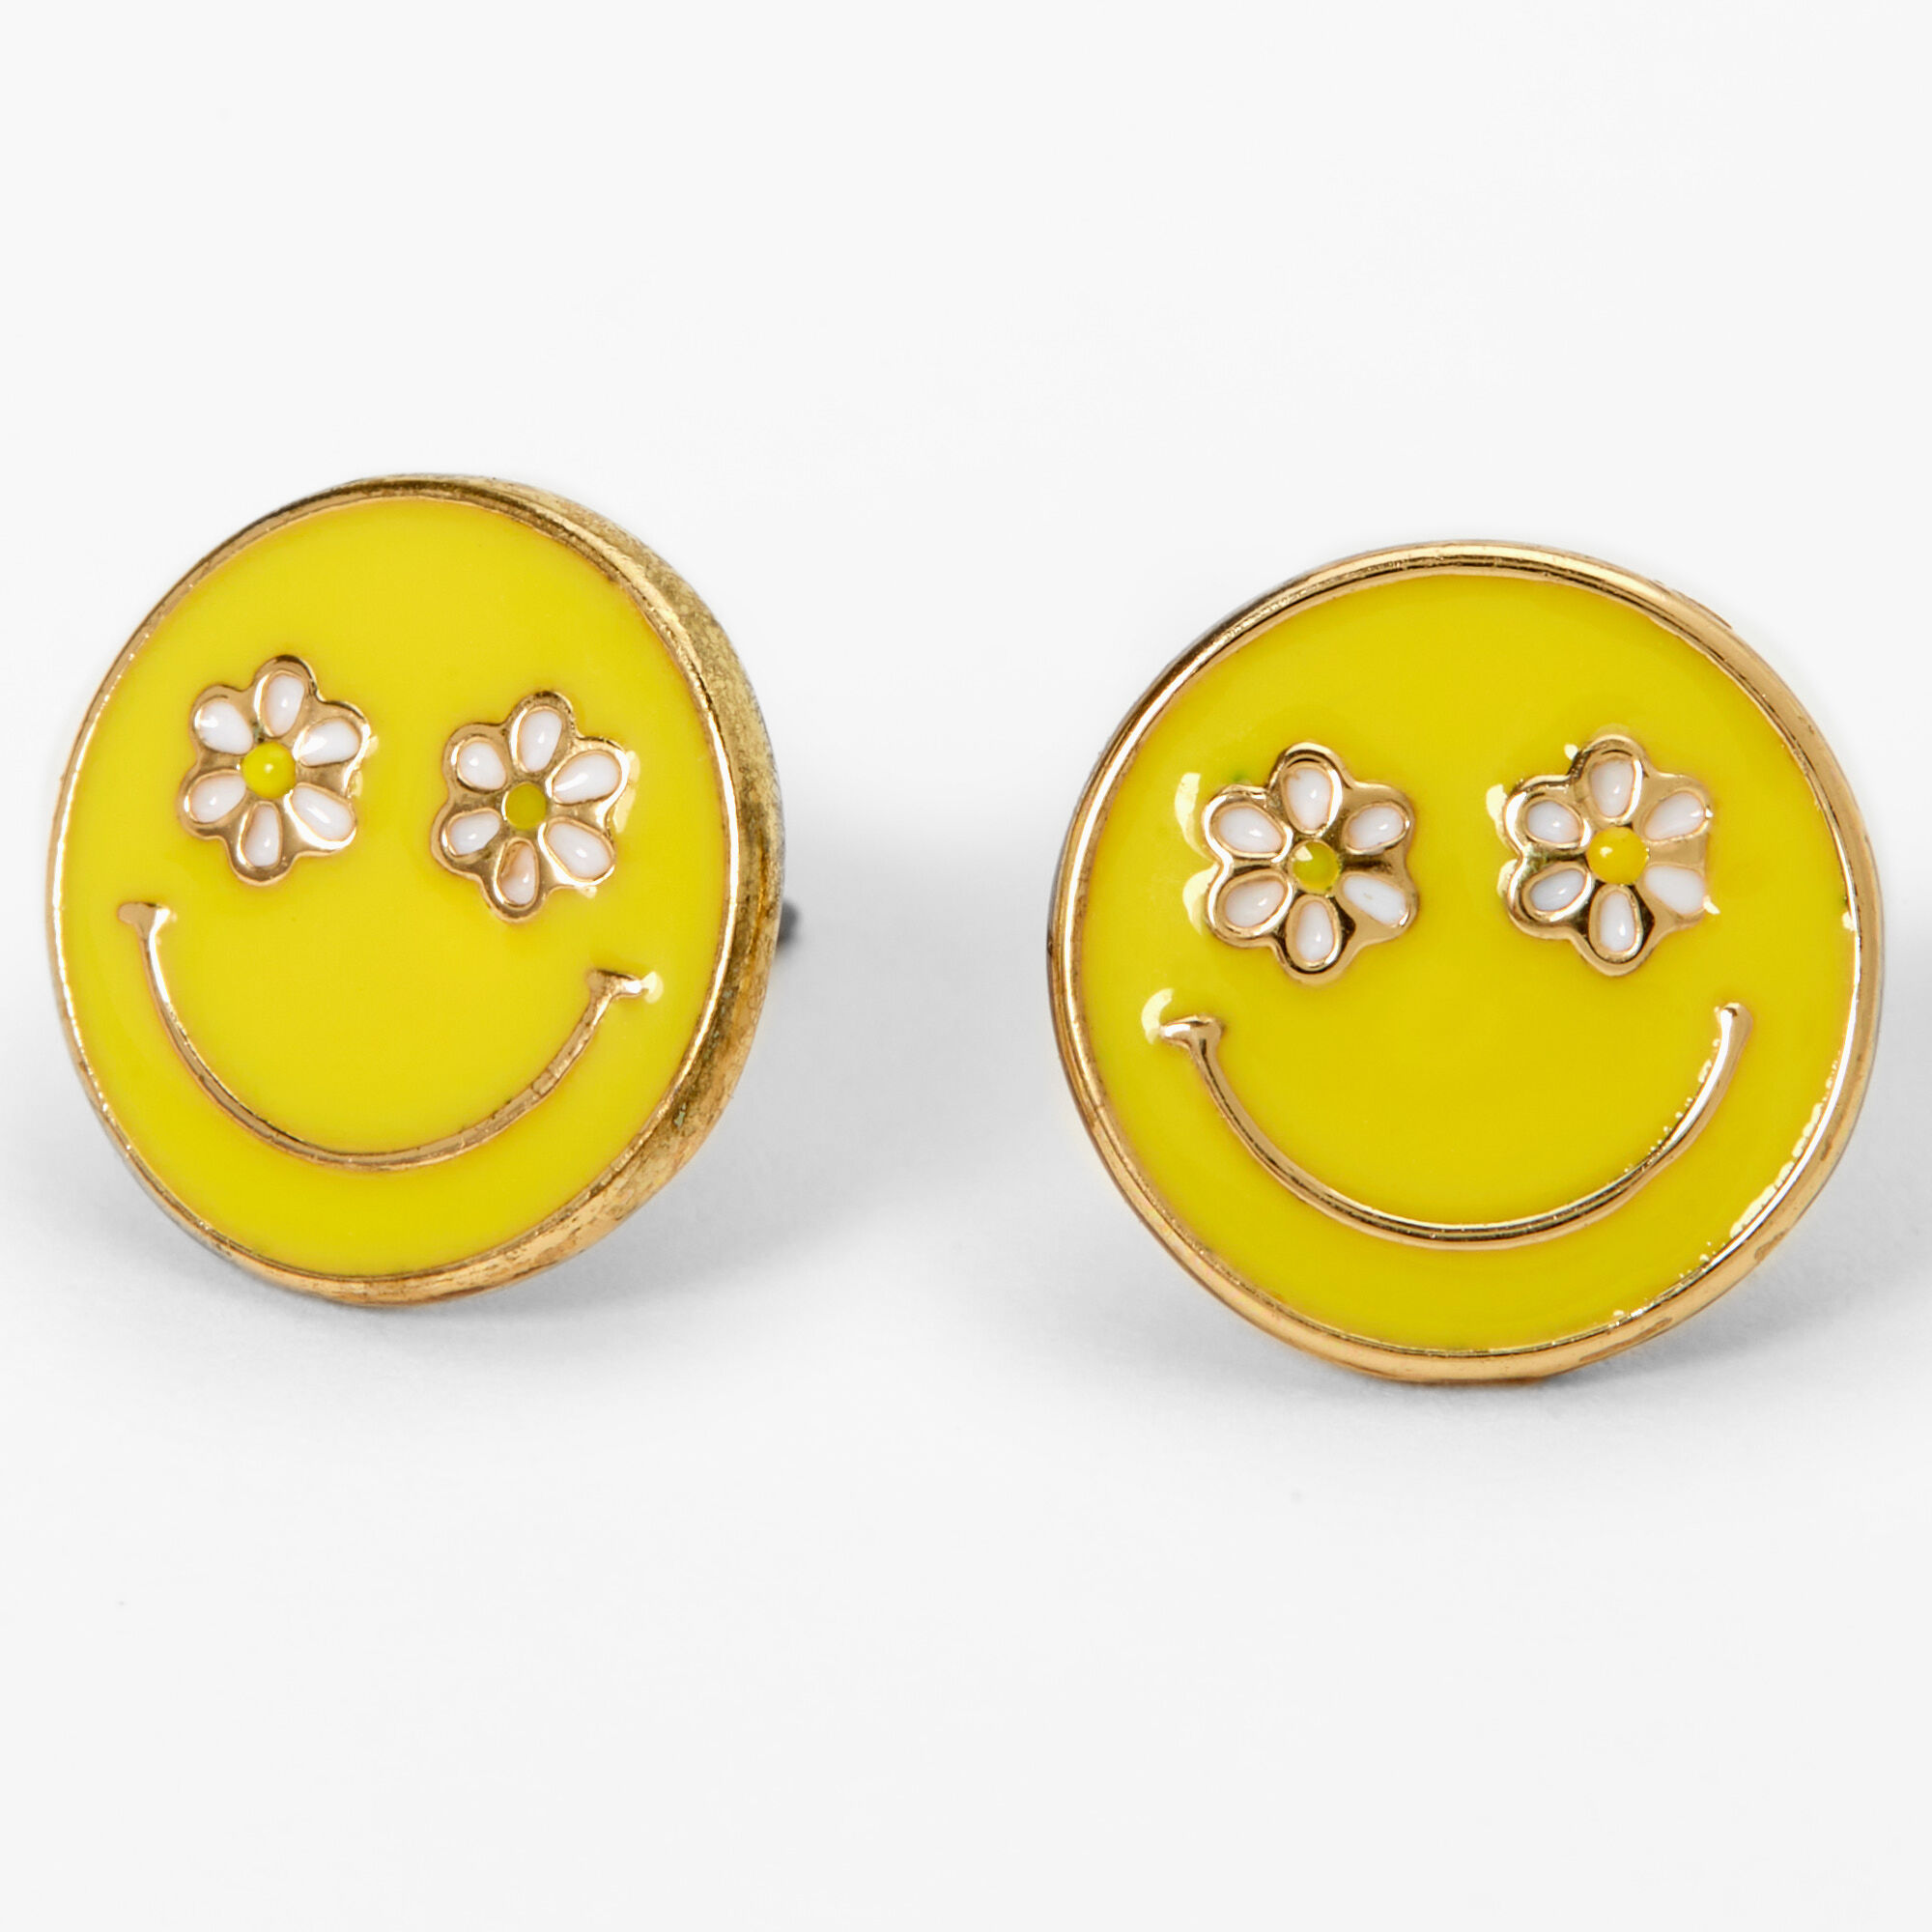 Yellow Daisy Flower Stud Earrings